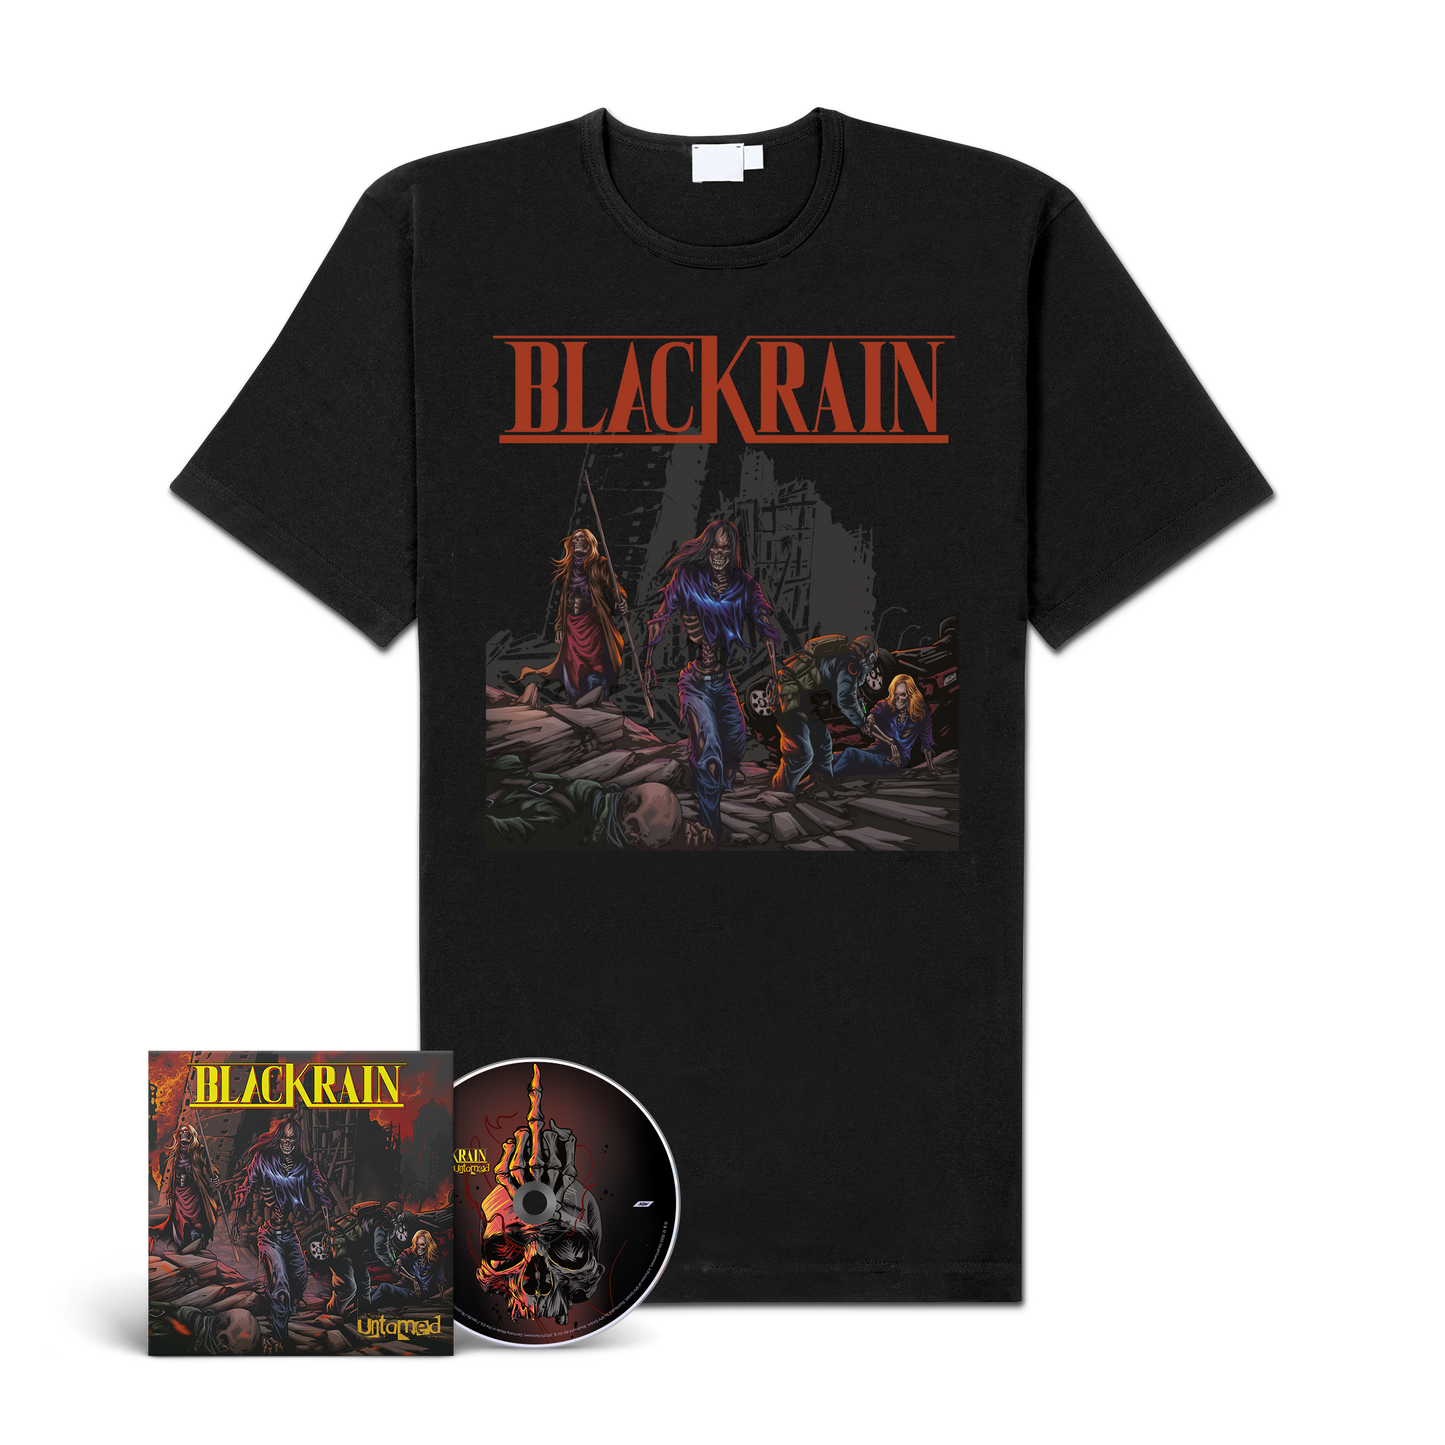 BlackRain "Untamed" CD-Bundle "Untamed"